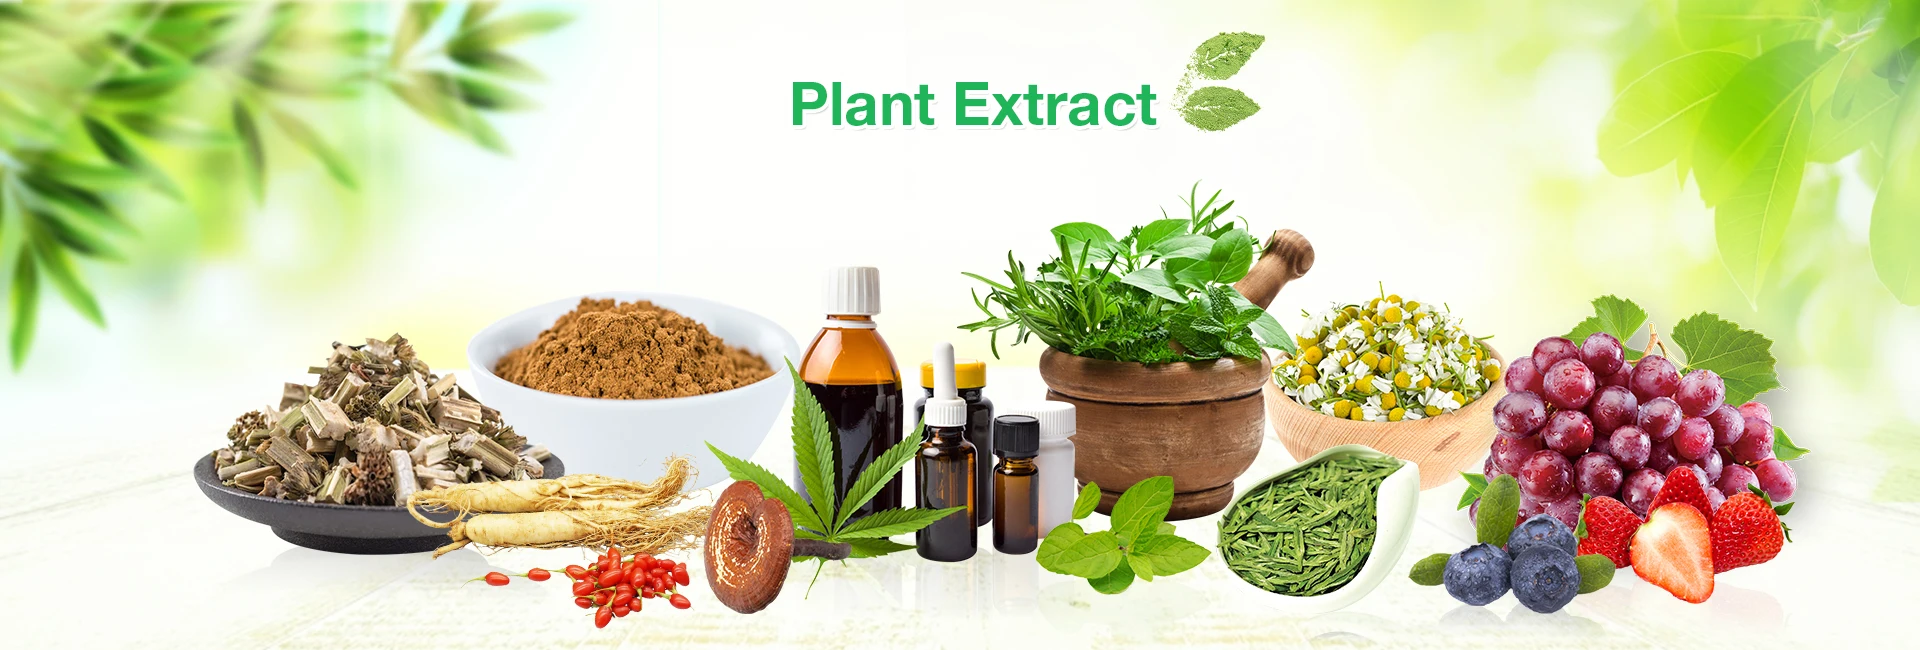 Plant extract